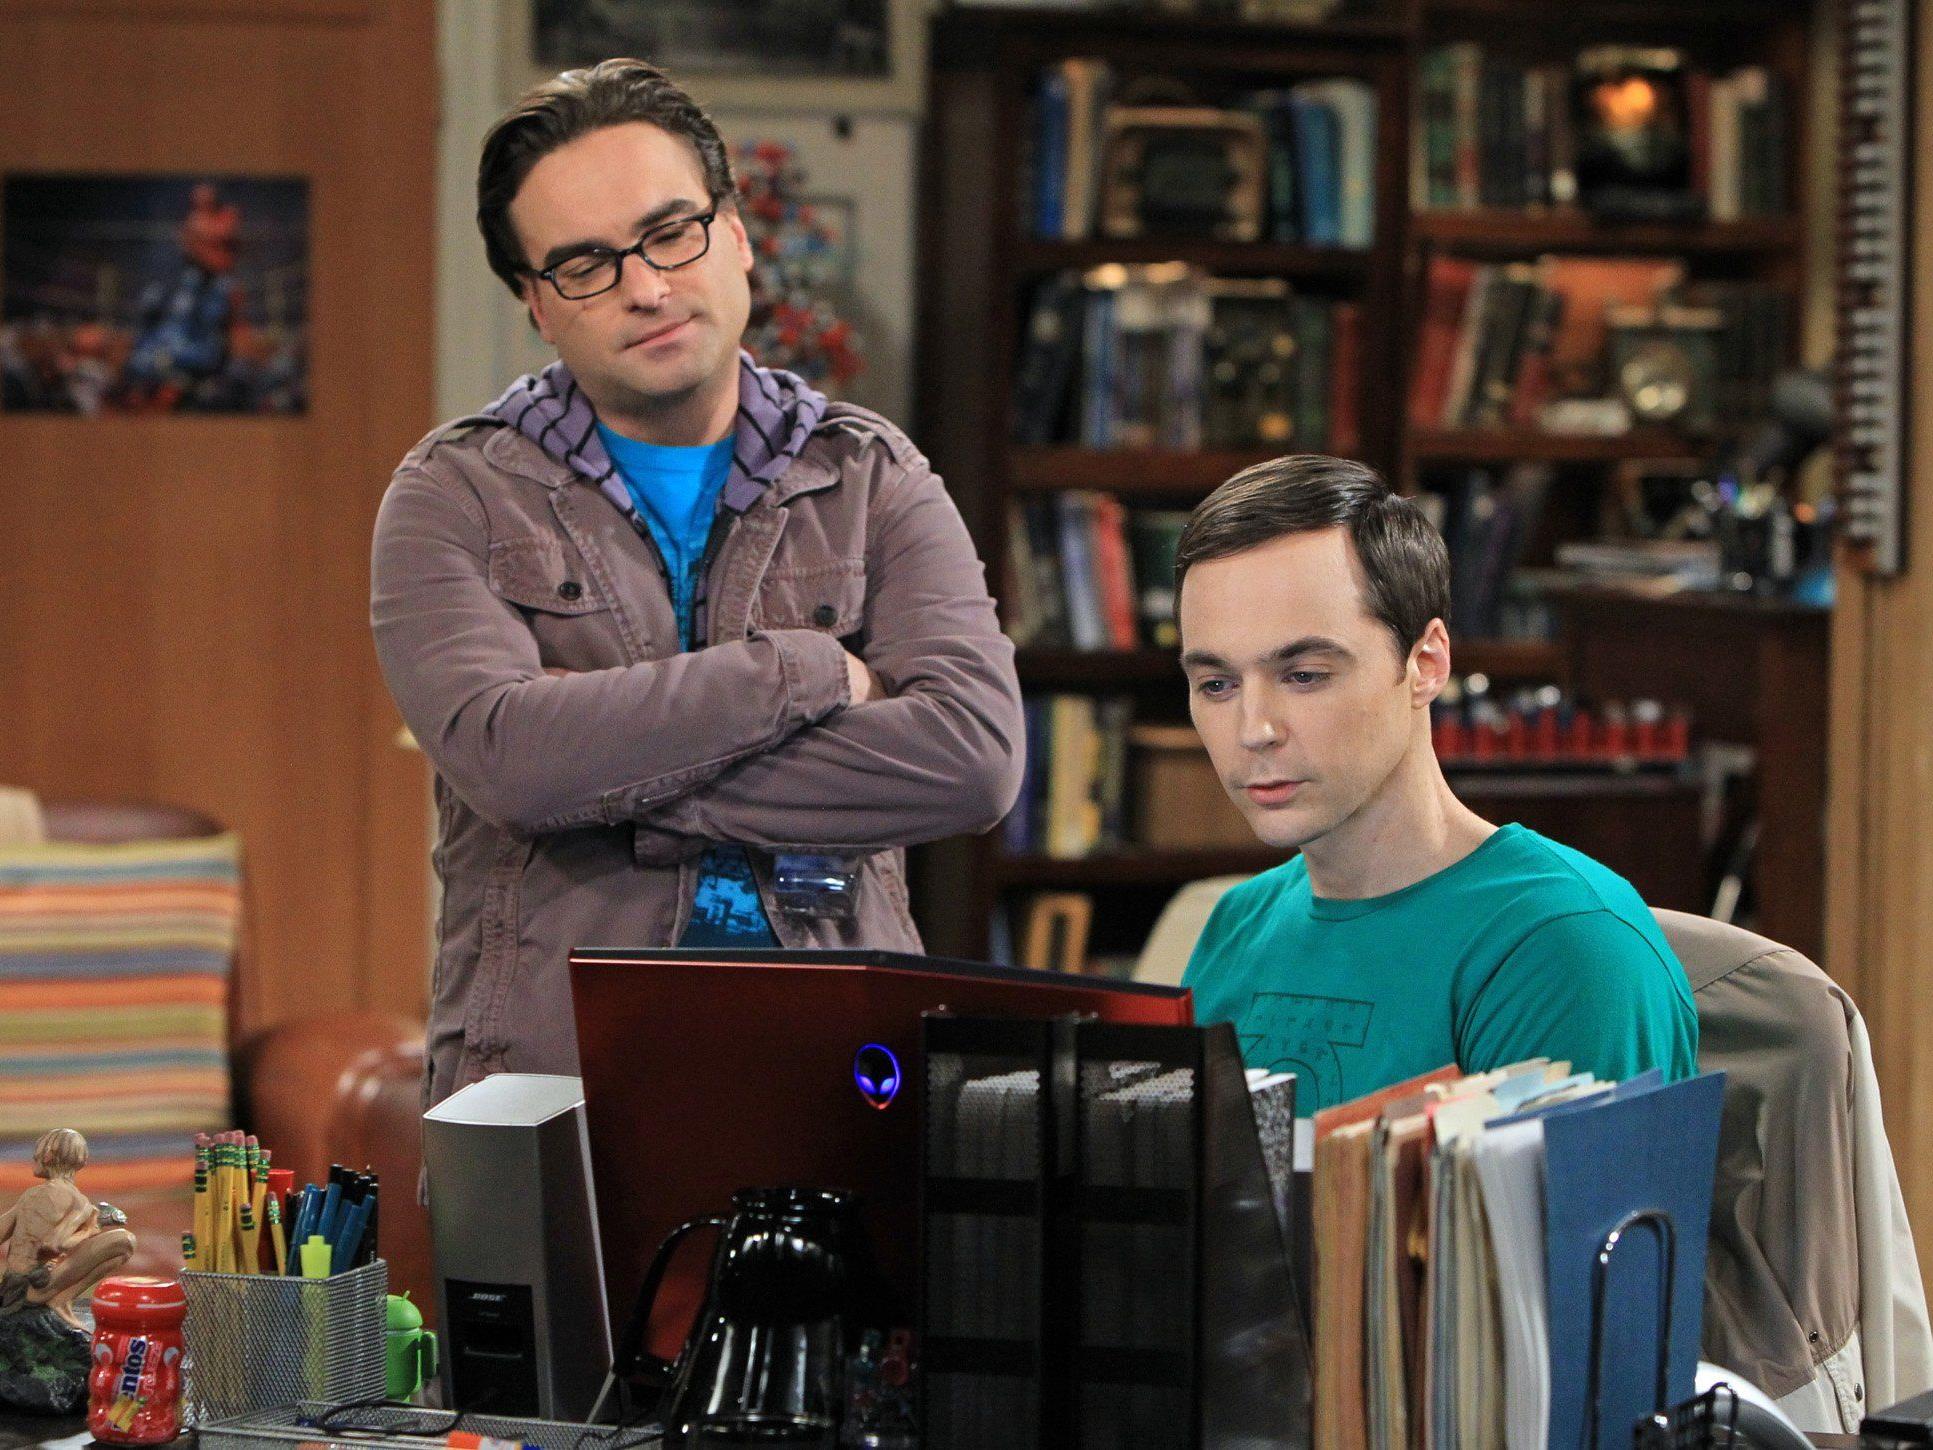 Die Nerds aus "The Big Bang Theory" konnten noch nicht alle Fragen beantworten.